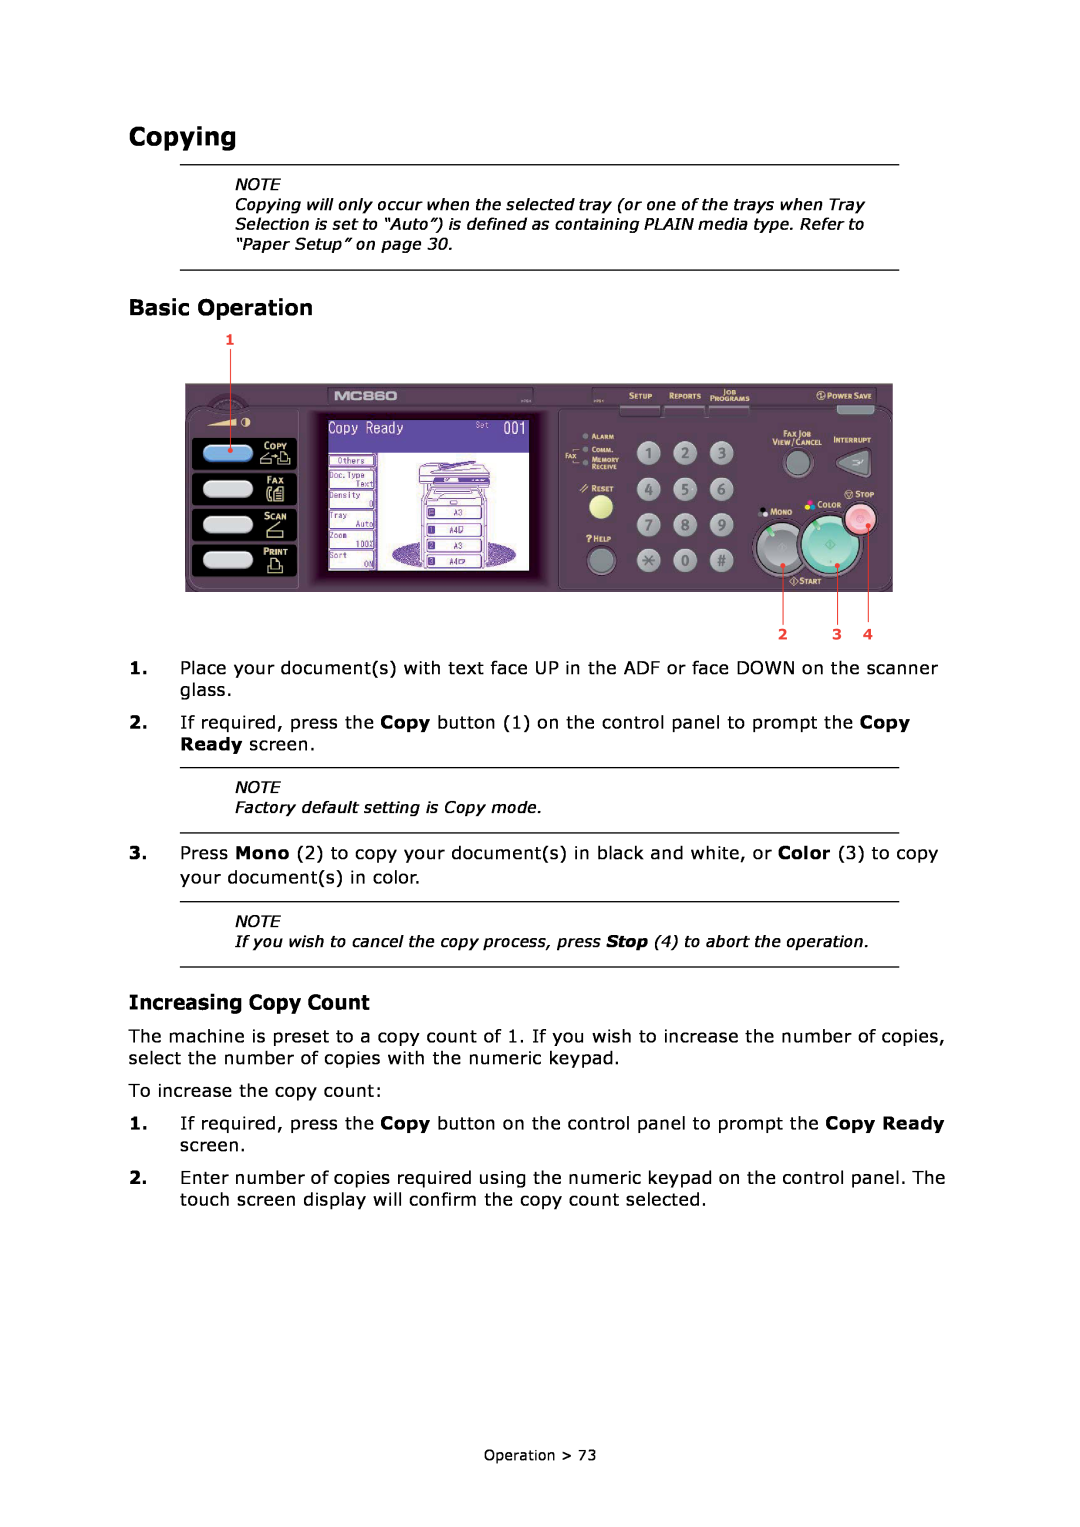 Oki MC860n MFP manual Copying, Basic Operation, Increasing Copy Count 